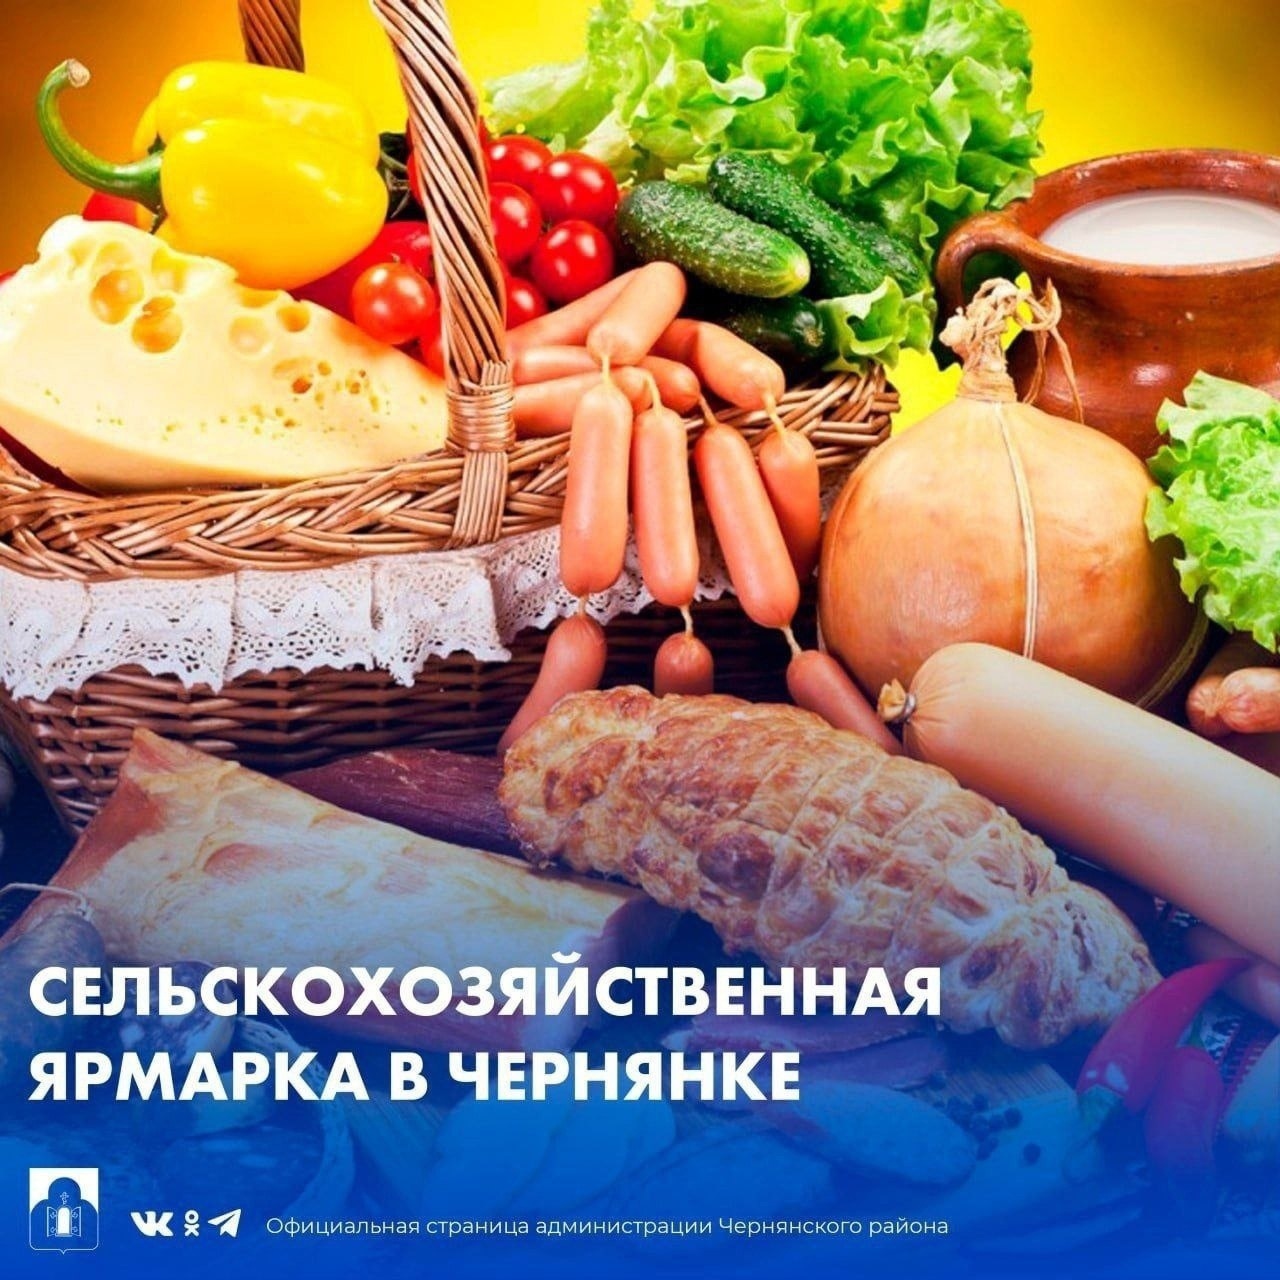 Администрация Чернянского района приглашает посетить сельскохозяйственную ярмарку.